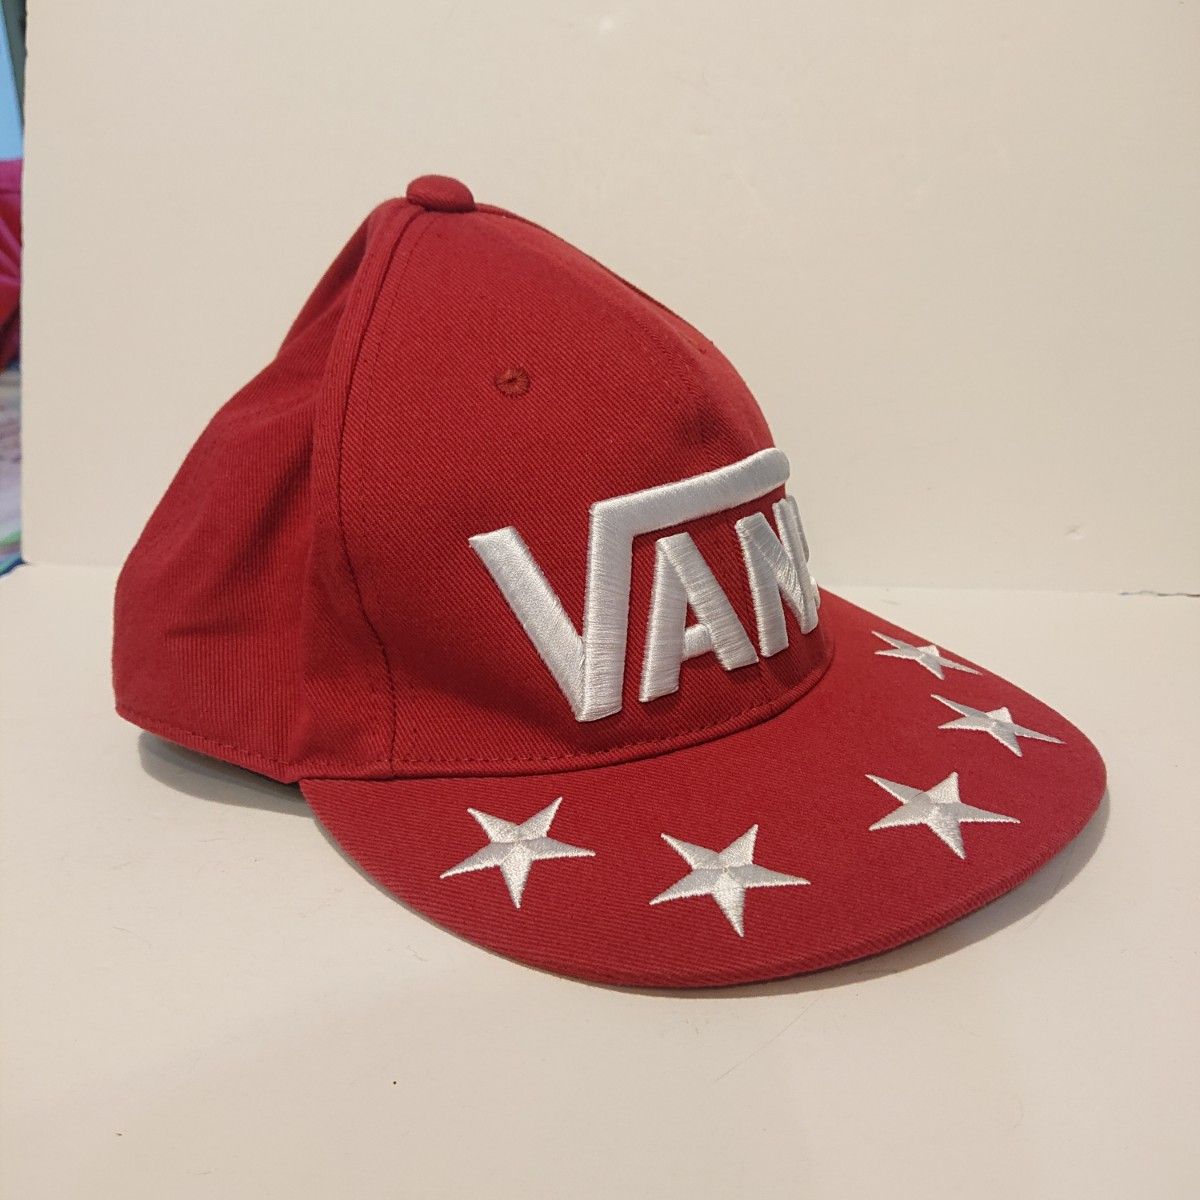 VANS キャップ 帽子 フリーサイズ メンズ バンズ 赤 美品